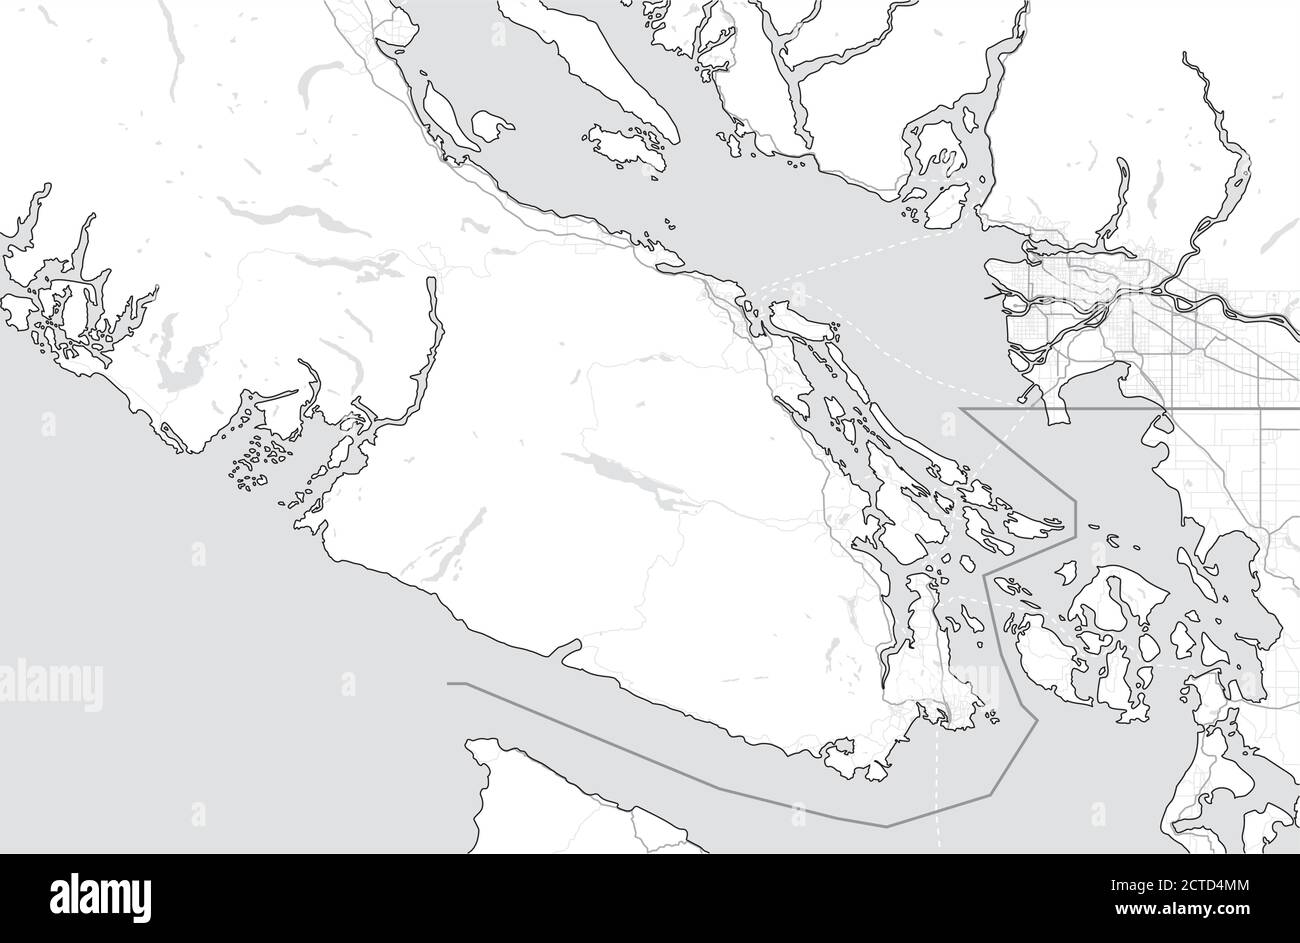 Carte de l'île de Vancouver (Nanaimo, Victoria, Tofino) et du Grand Vancouver, Canada, Colombie-Britannique. Carte touristique. Carte d'échelle de gris simple sans texte. Illustration de Vecteur